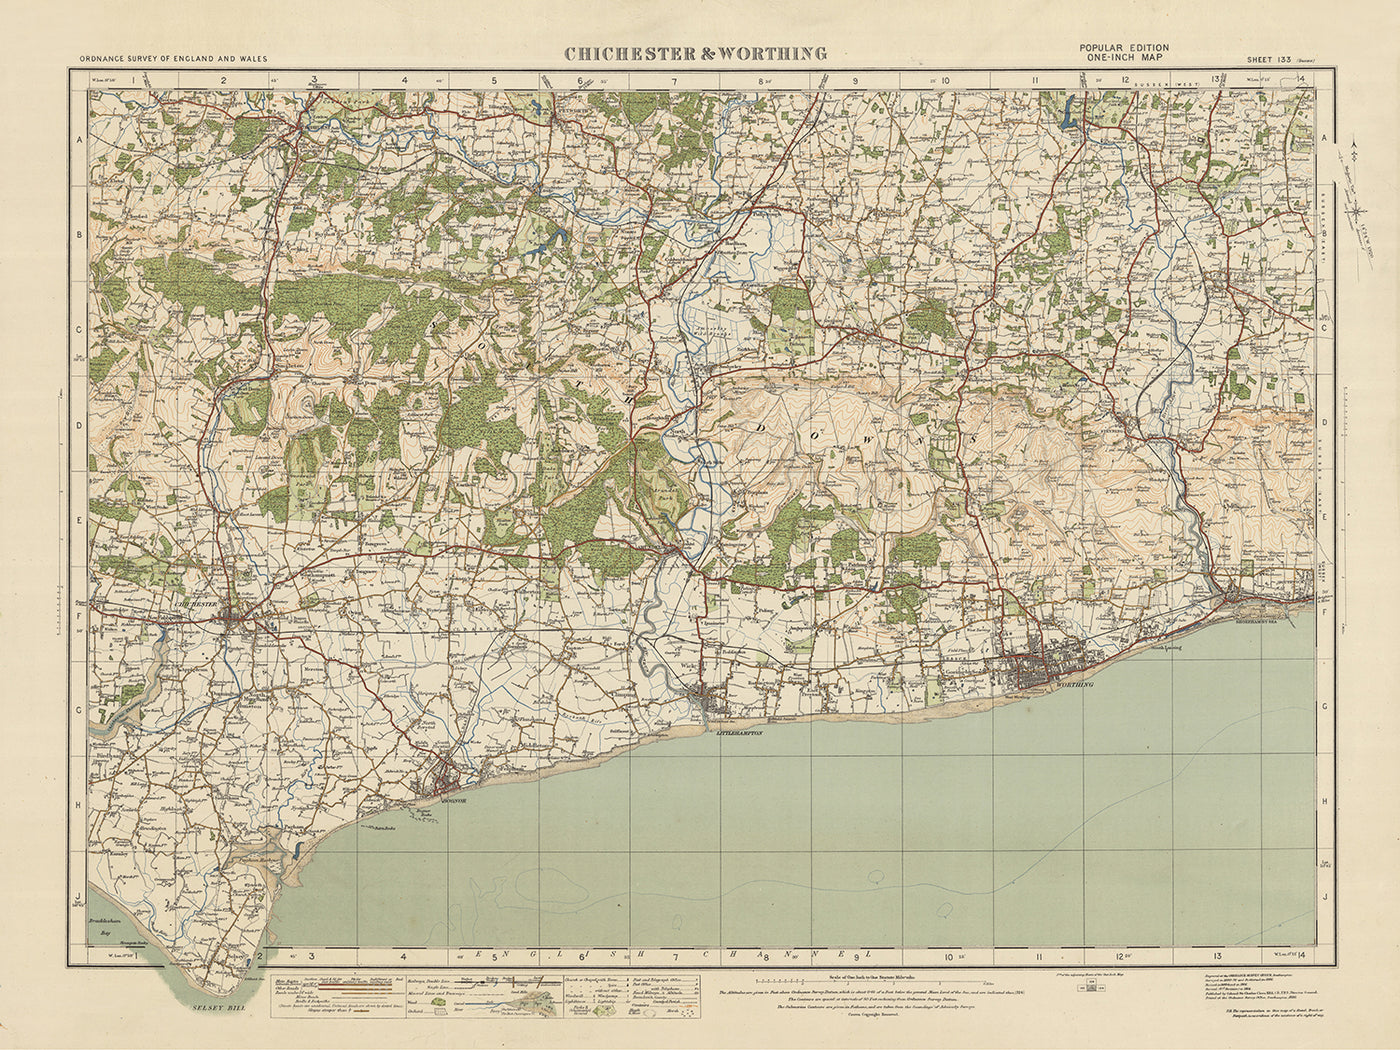 Carte Old Ordnance Survey, feuille 133 - Chichester & Worthing, 1925 : Bognor Regis, Littlehampton, Selsey, Worthing, Midhurst